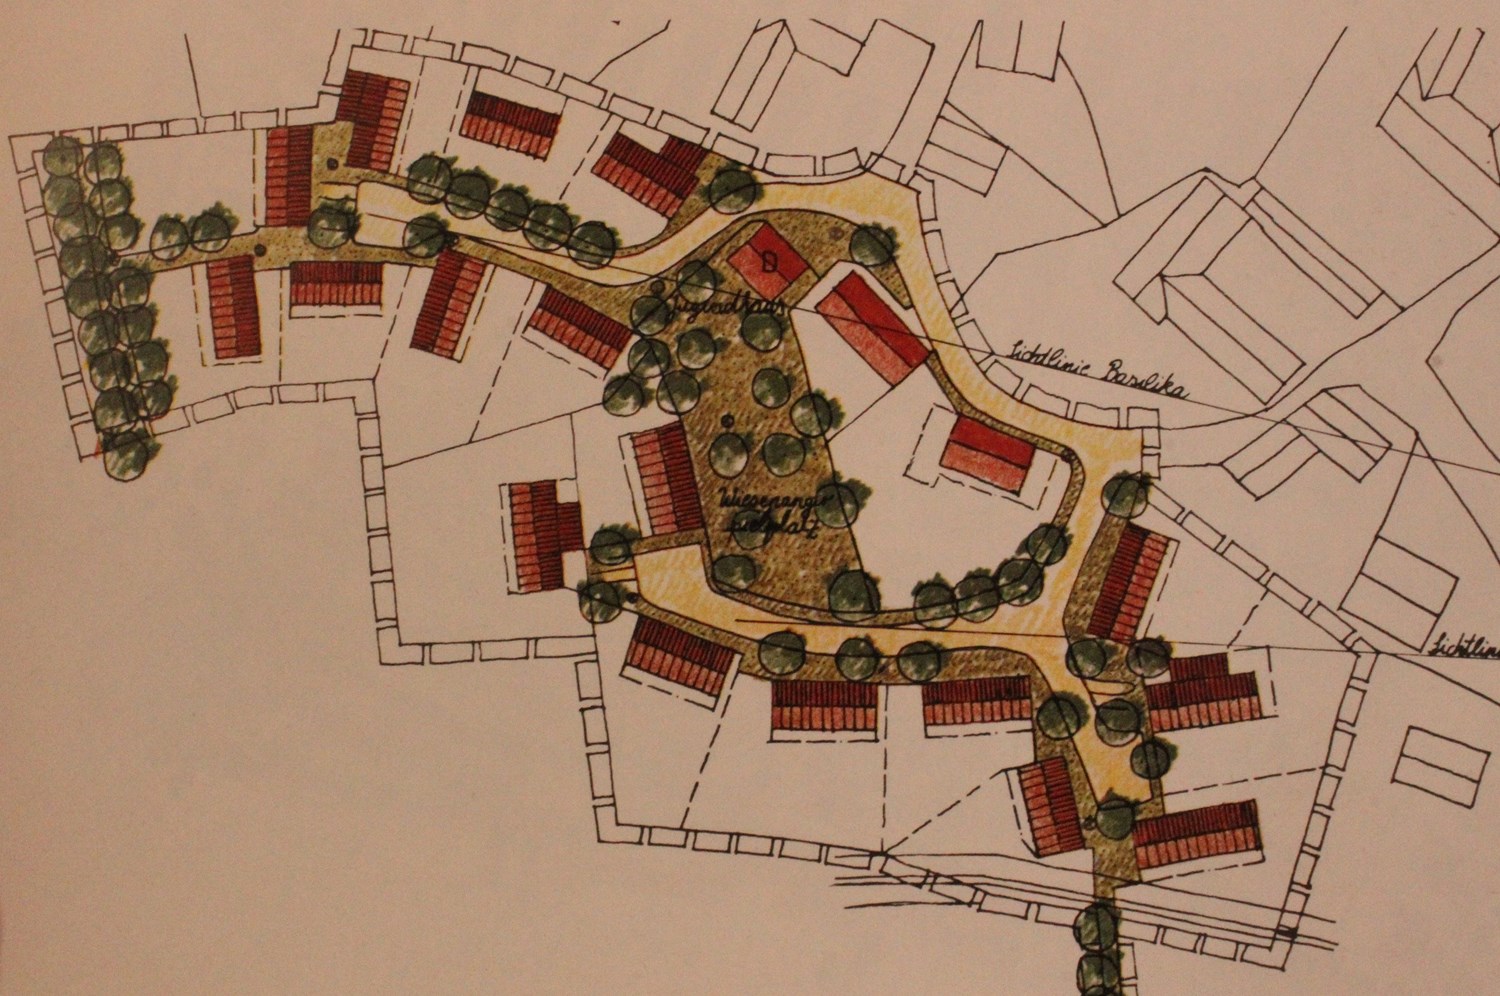 Planung für ein Neubaugebiet im Landkreis Deggendorf Quelle: Planen und Bauen im ländlichen Raum, Oberste Baubehörde 1982